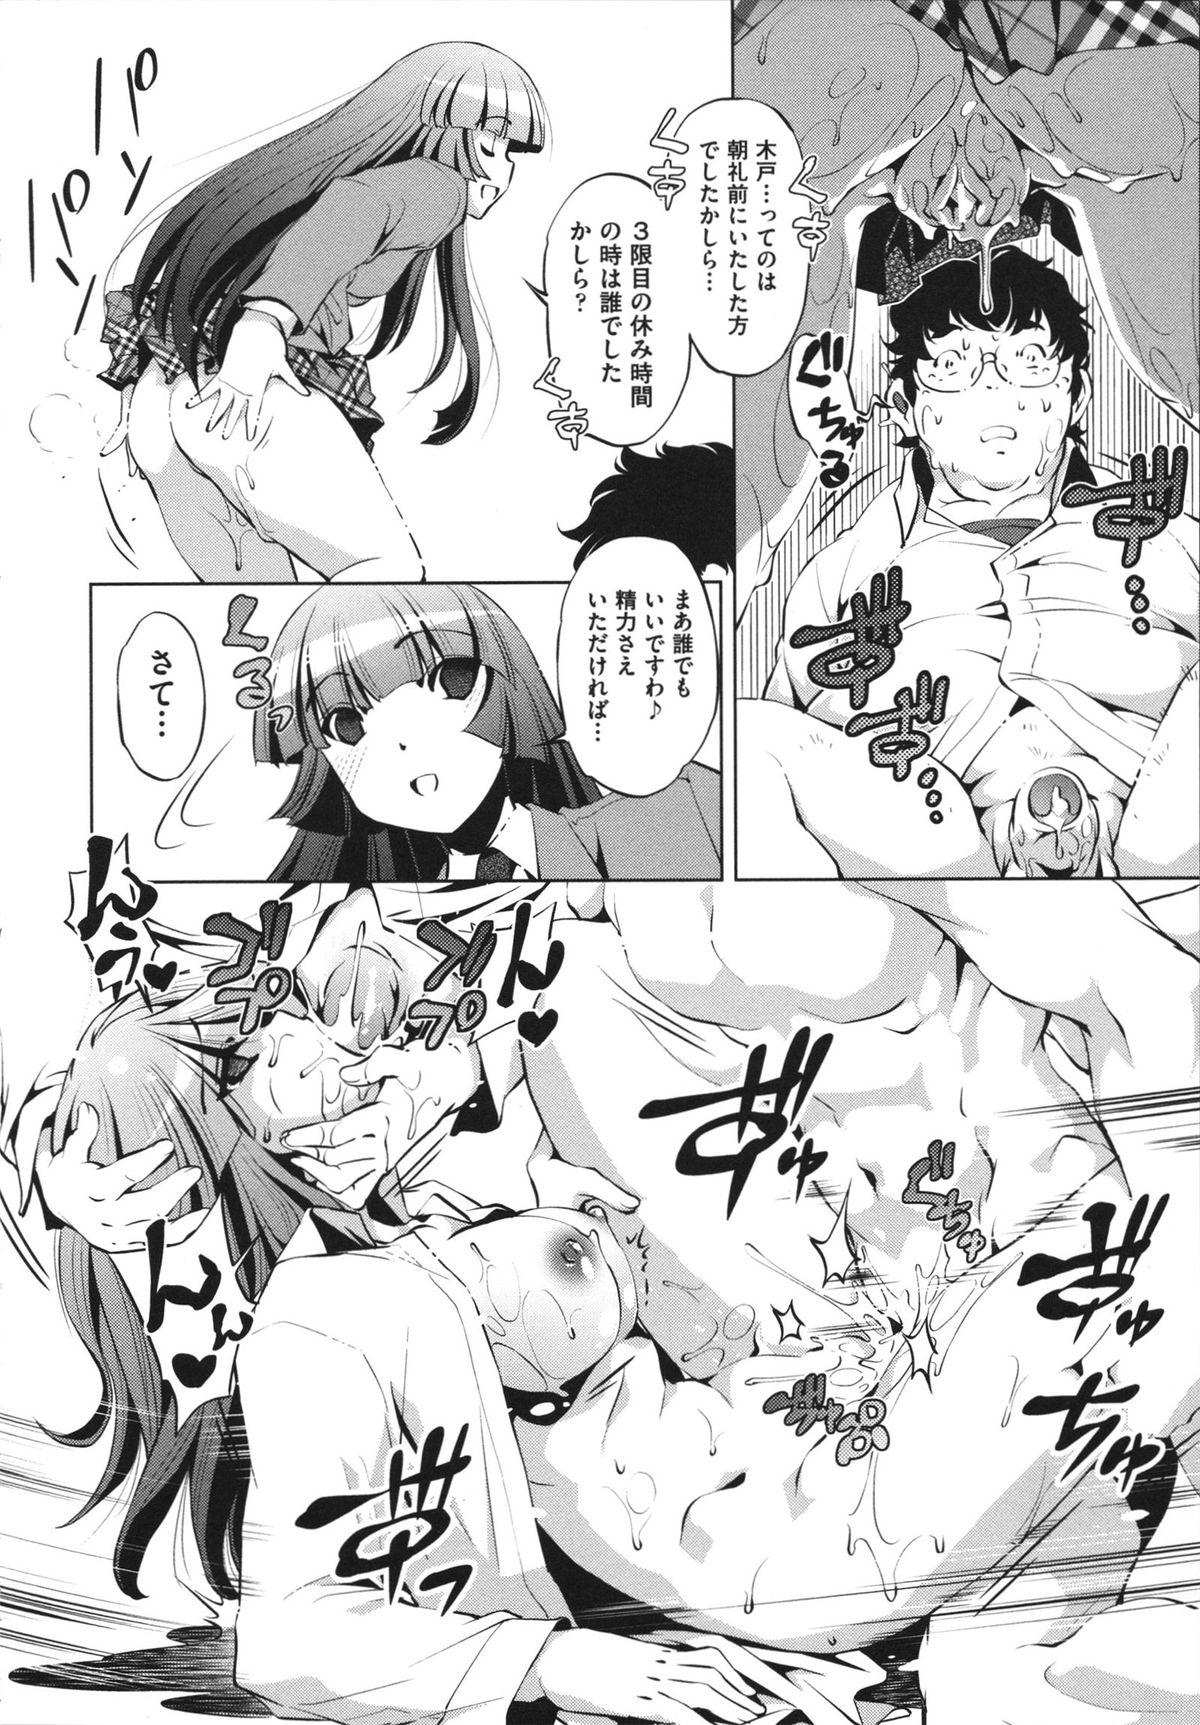 [Ootori Ryuuji] Shokushu wa Yawarakana Chibusa ni Makitsuki Onna-tachi no Ana wo Kakimidasu - Feeler coils around a soft breast and violates women's hole. 135